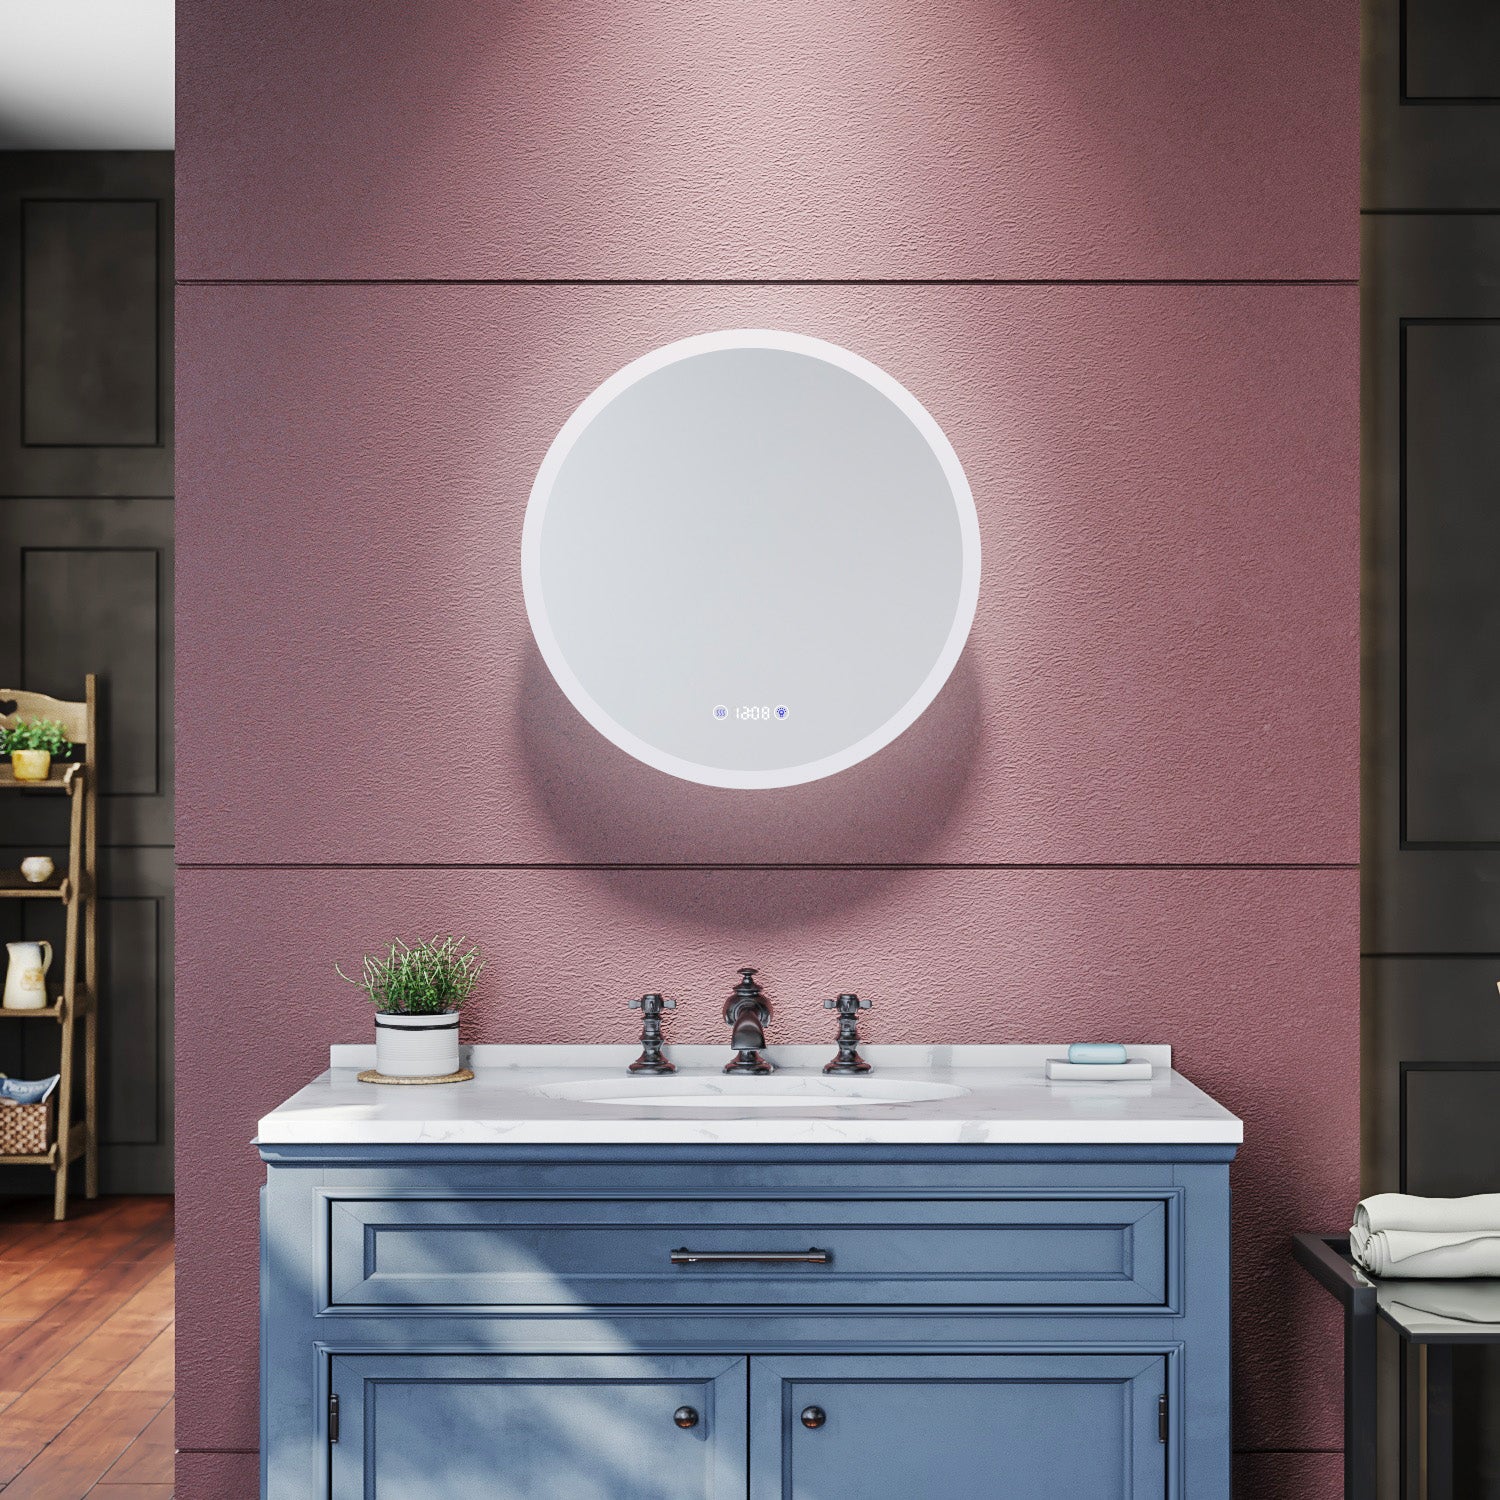 SIRHONA Miroir de salle de bains 600 x 600 x 35mm - Miroirs cosmétiques muraux - Miroir avec led illumination - Trois températures de couleur - Anti-poussière et antibuée - SIRHONA